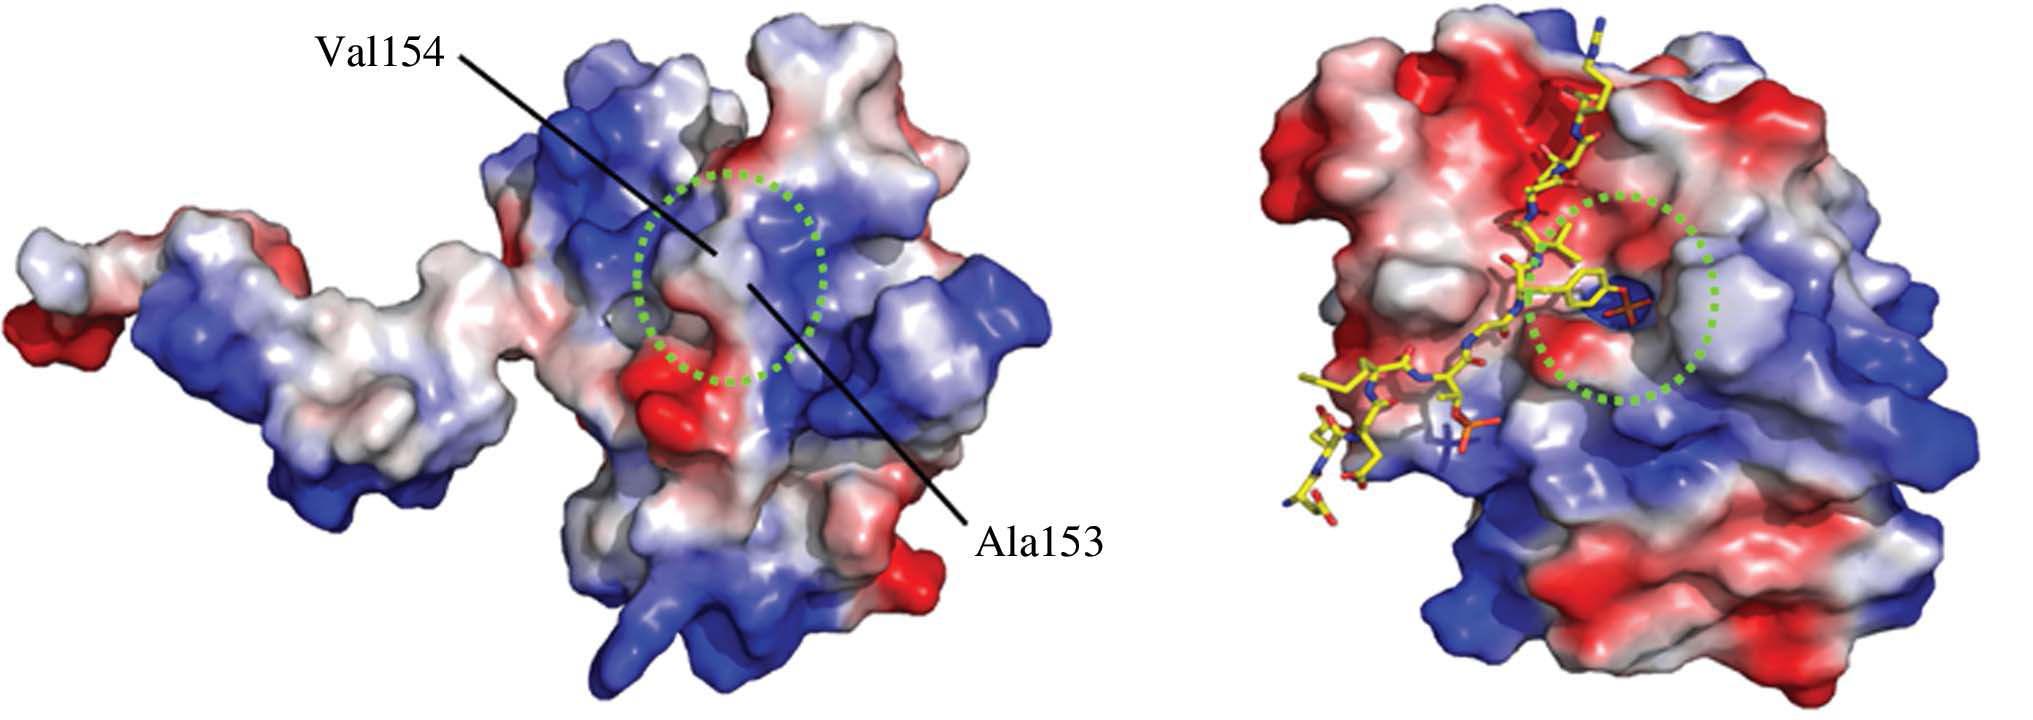 표면 전기분포도로 나타낸 DUSP26-C(좌측)와 VHR-peptide 복합체(우측)